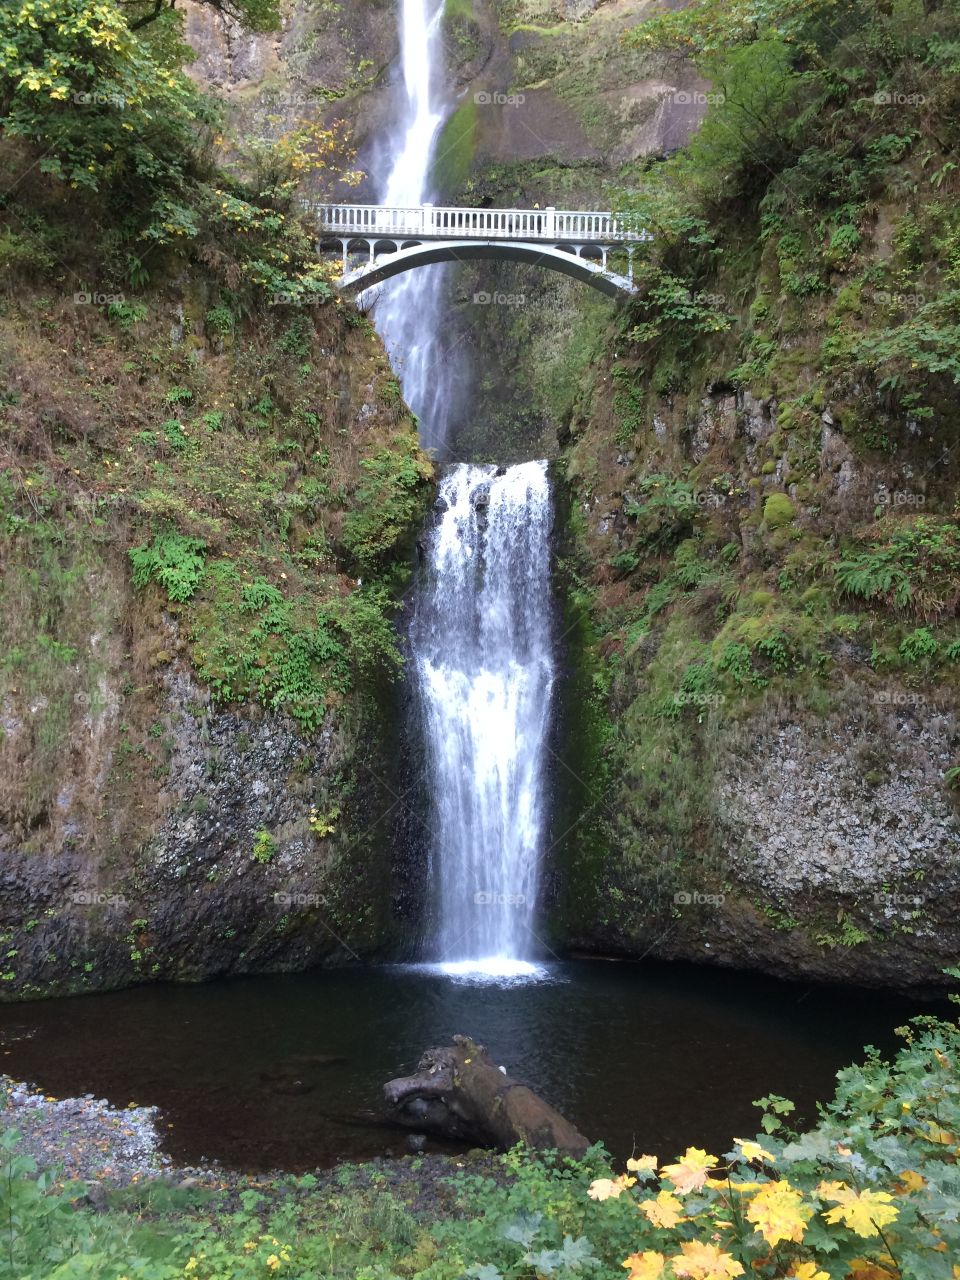 Oregon water fall